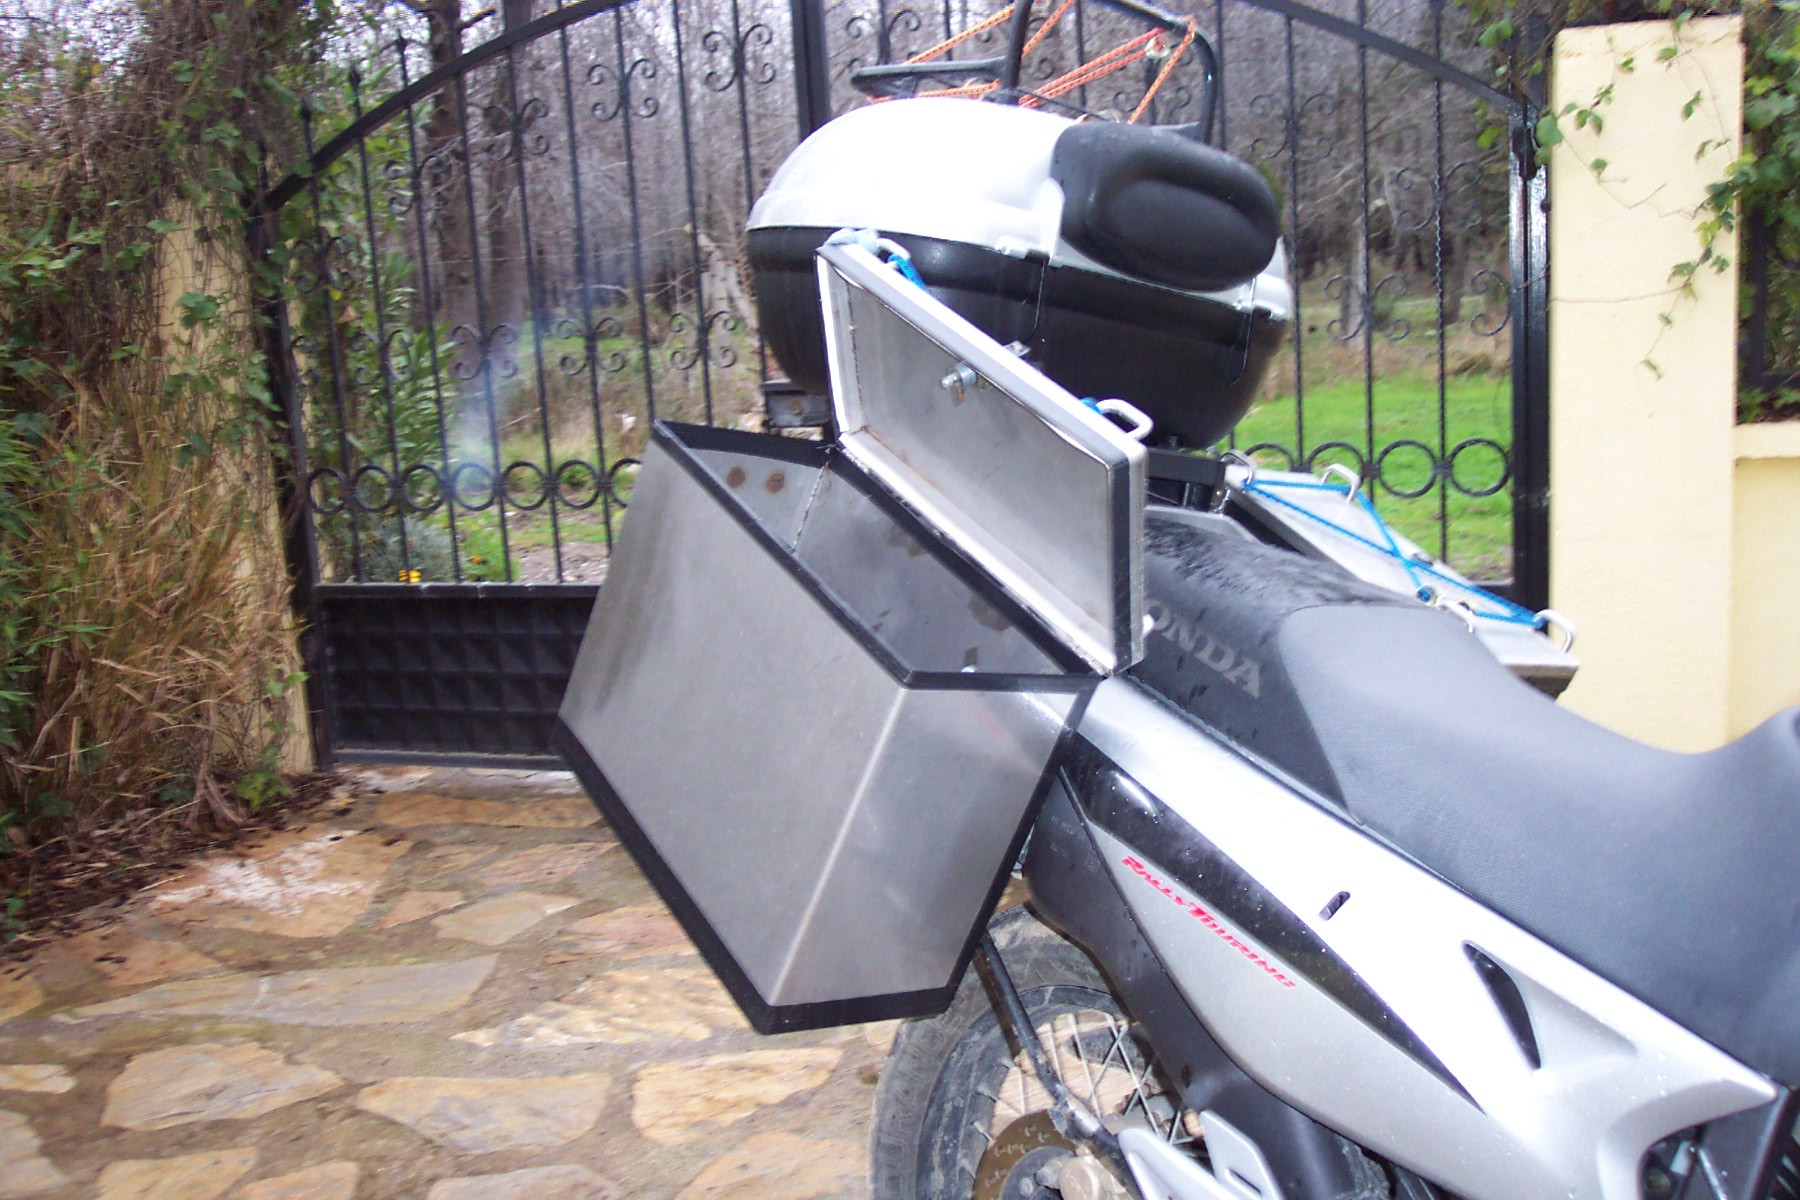 DIY Motorcycle Luggage Rack
 HOMEMADE LUGGAGE RACK & PANNIERS